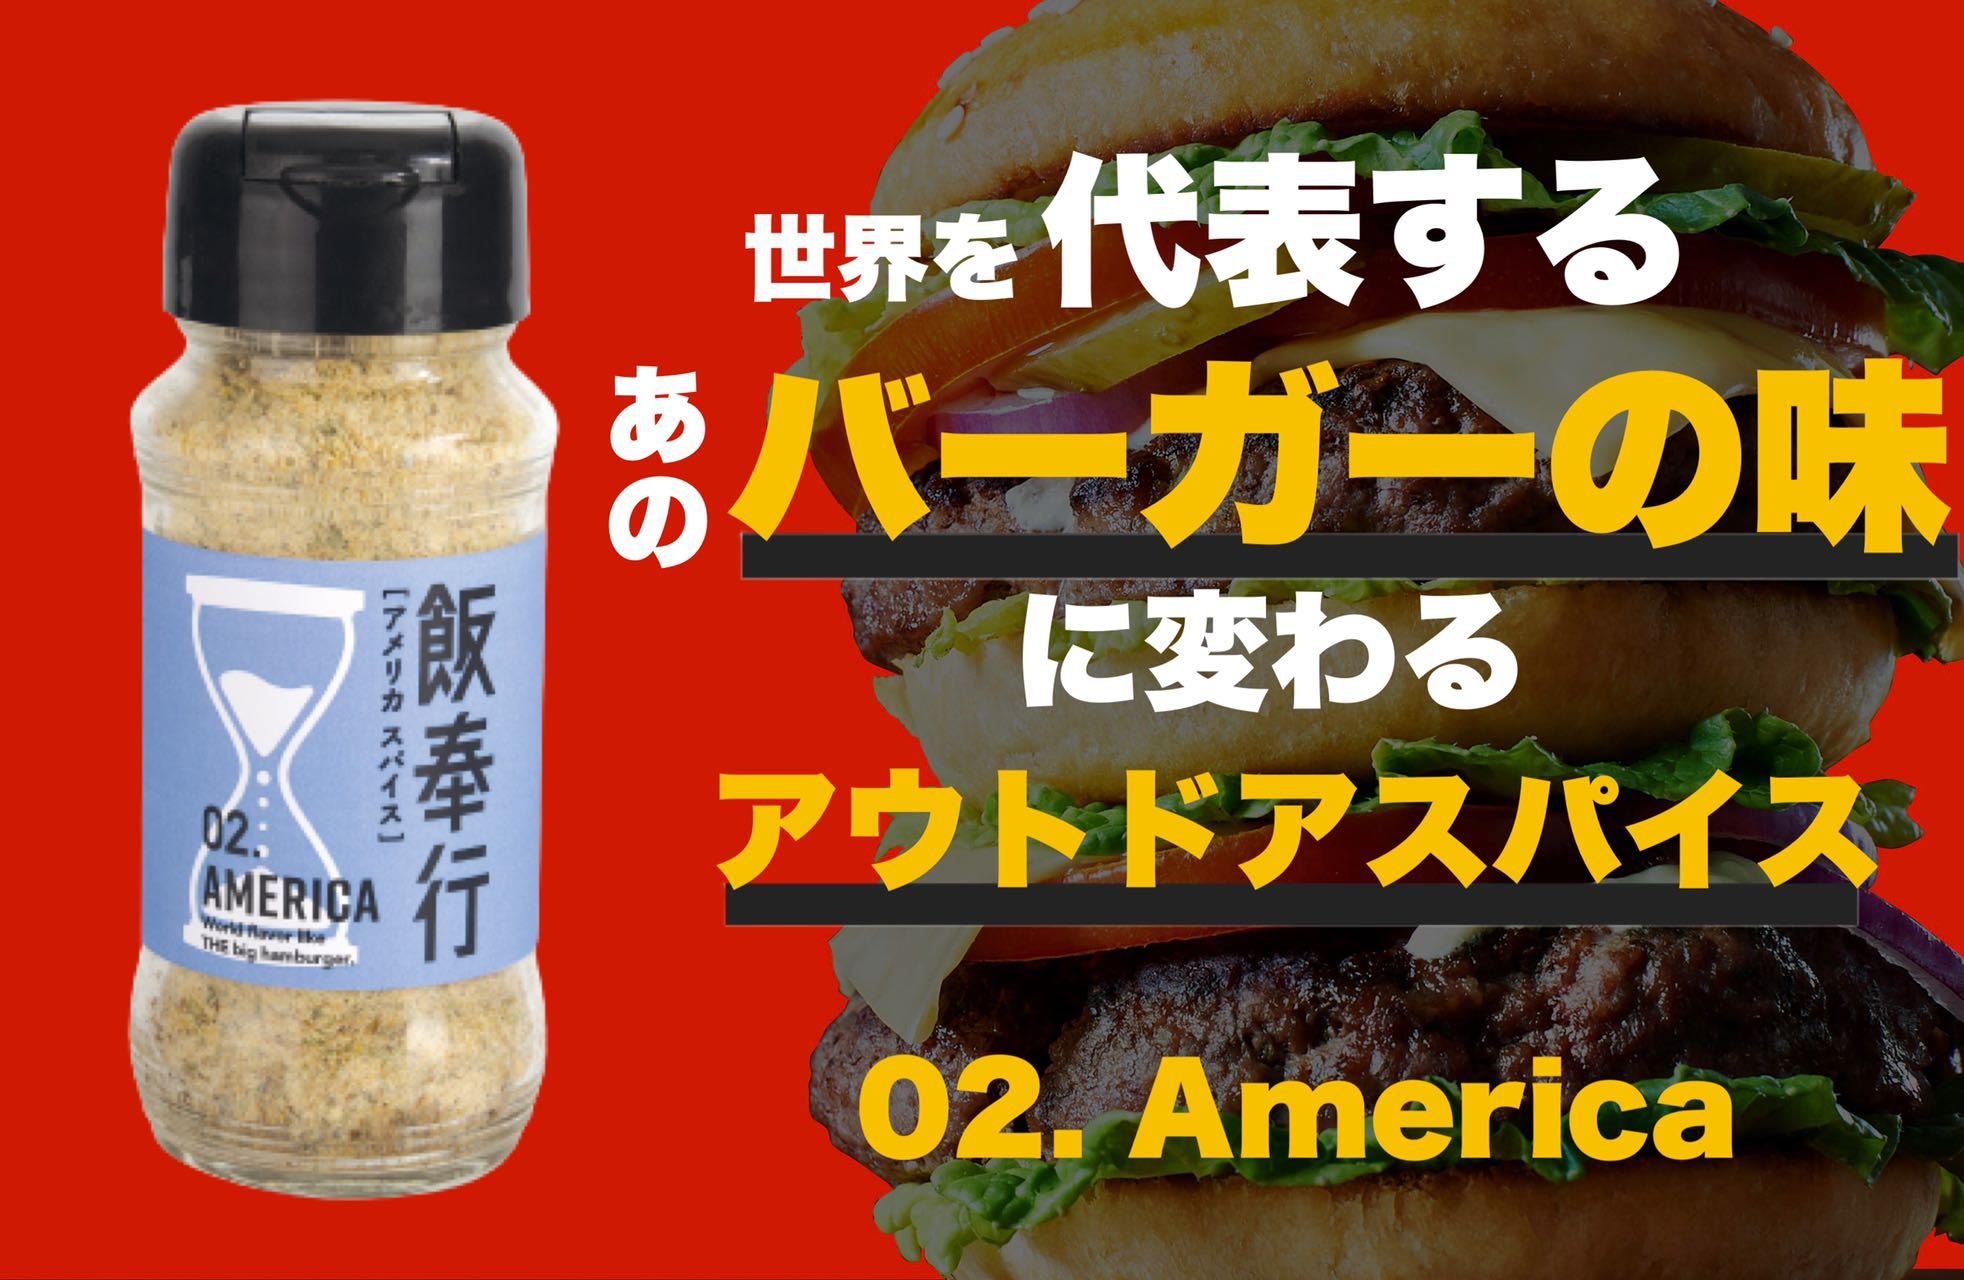 世界的に有名なハンバーガーの「あの味」を再現できる
“Americaスパイス”
9月21日にクラウドファンディングを開始